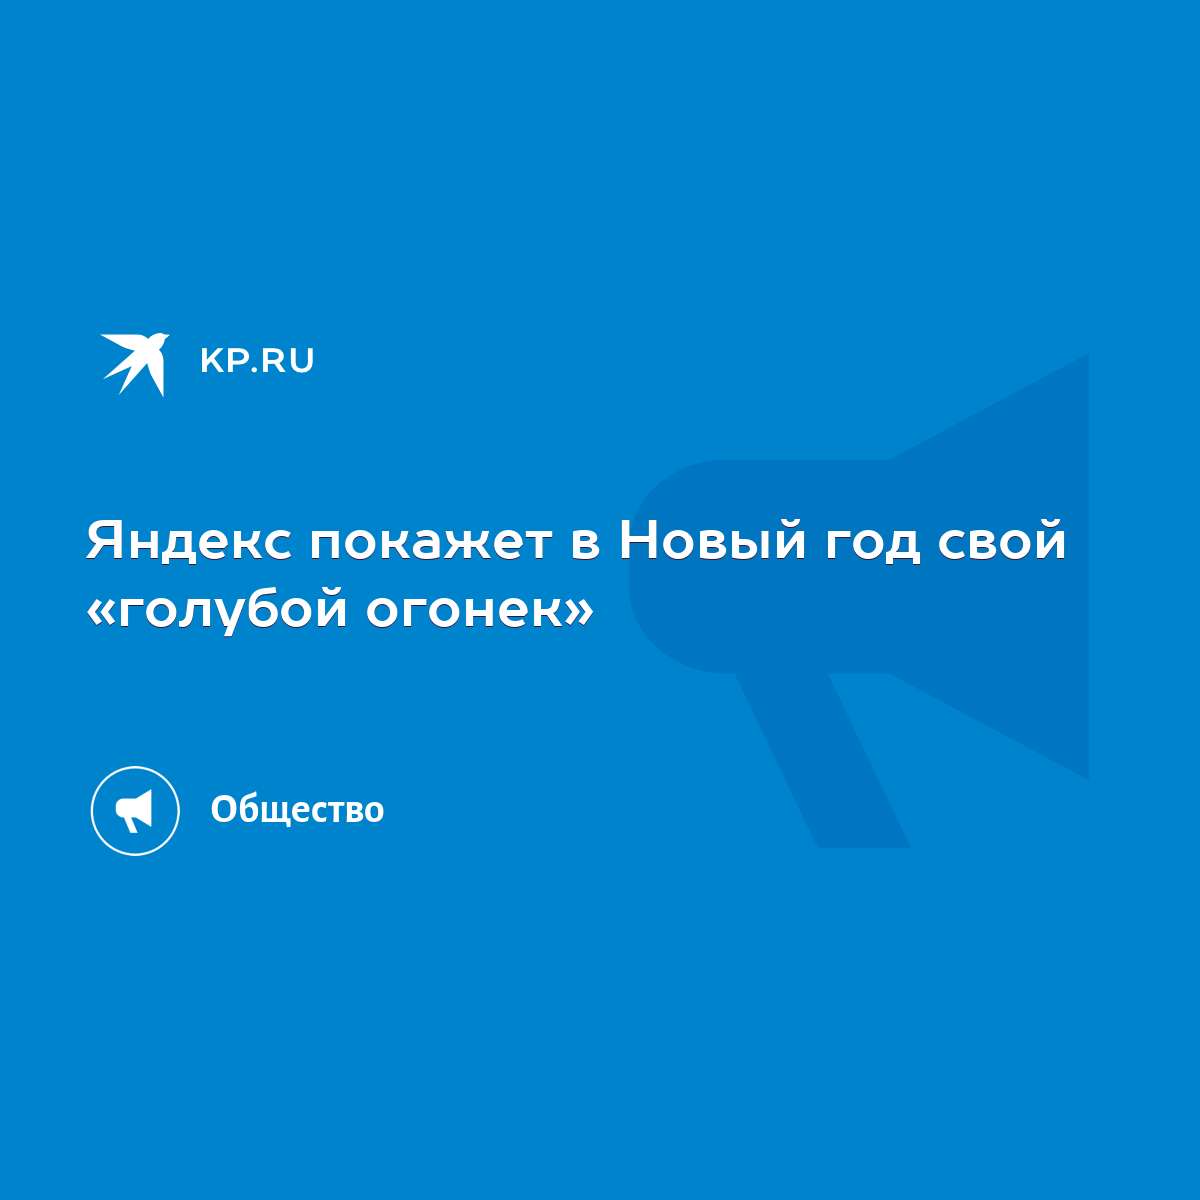 Яндекс покажет в Новый год свой «голубой огонек» - KP.RU